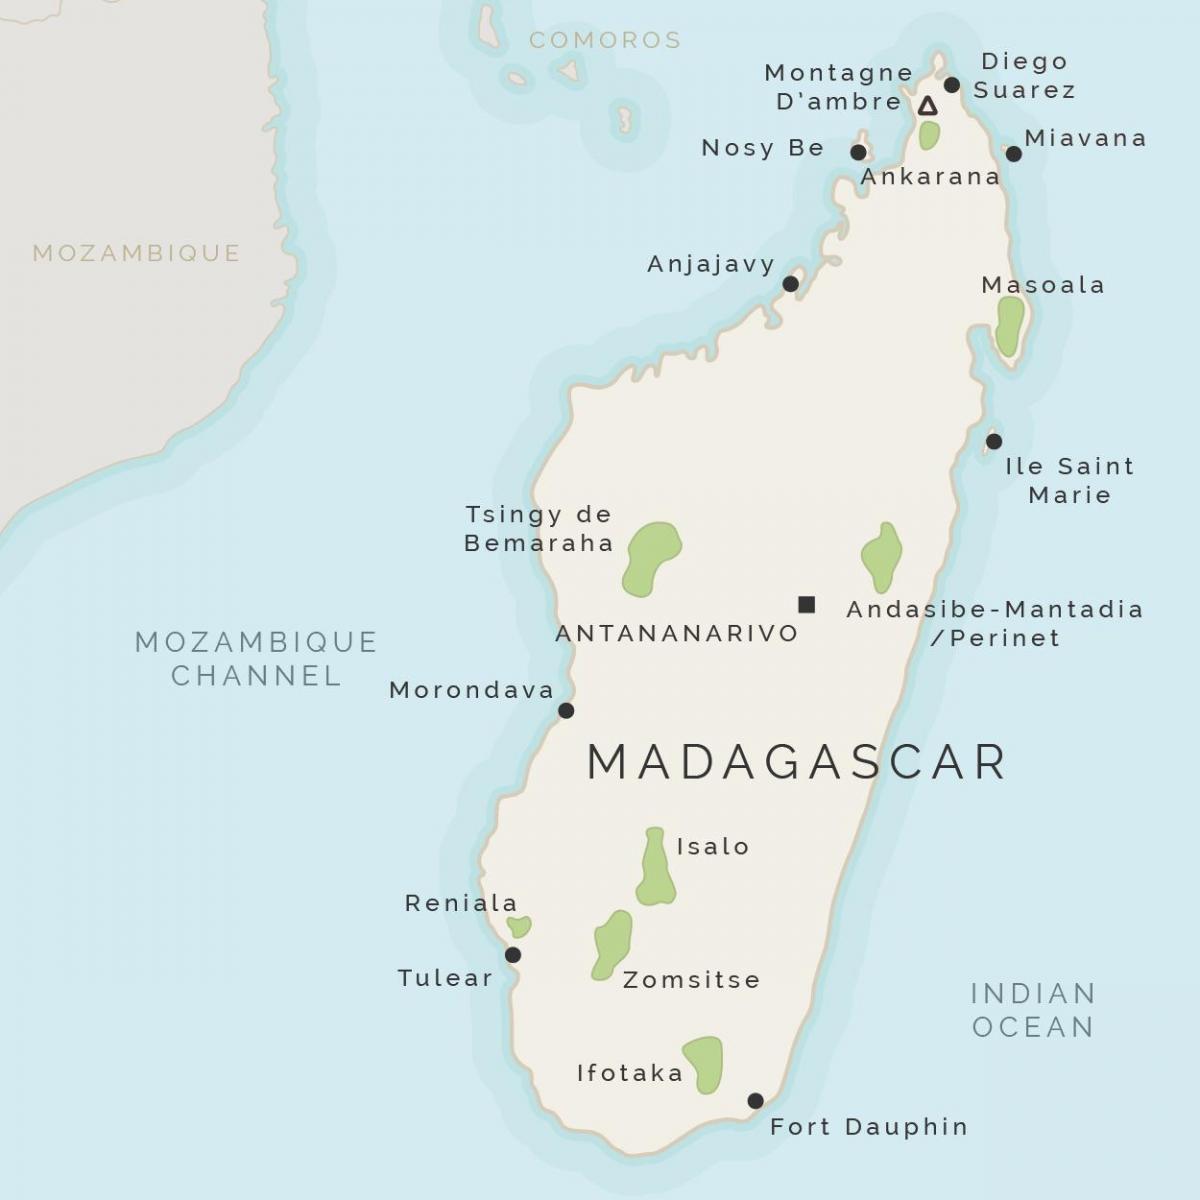 kort Madagaskar og de omkringliggende øer